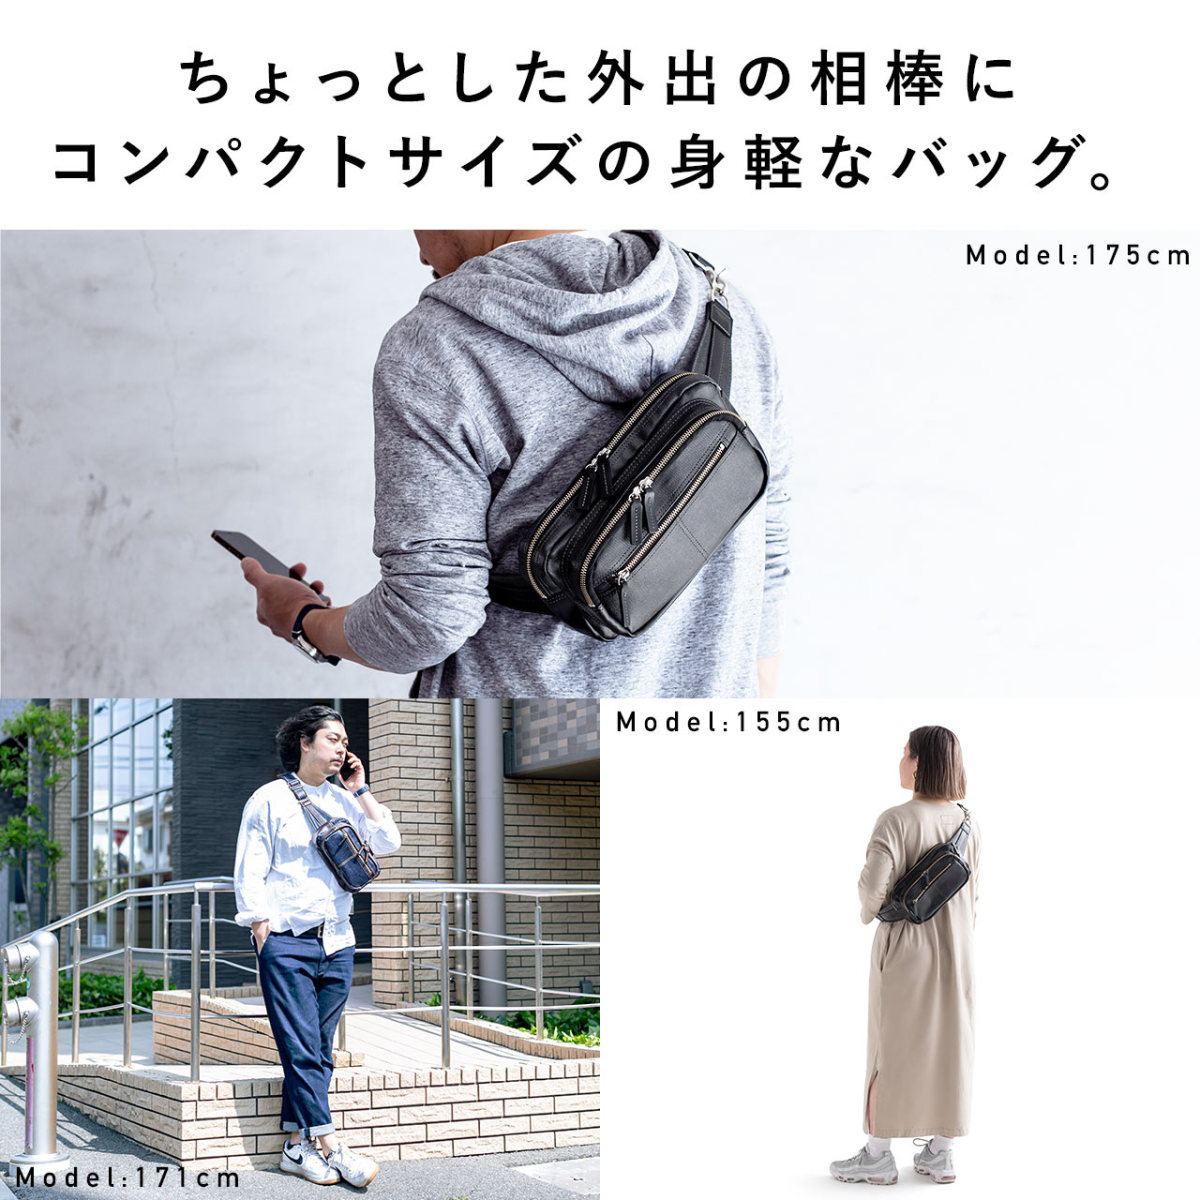 ボディバッグ メンズ ショルダーバッグ 簡易防水 撥水 日本製 豊岡鞄 デニム 斜めがけ メッセンジャー ウエストポーチ 小さめ バック